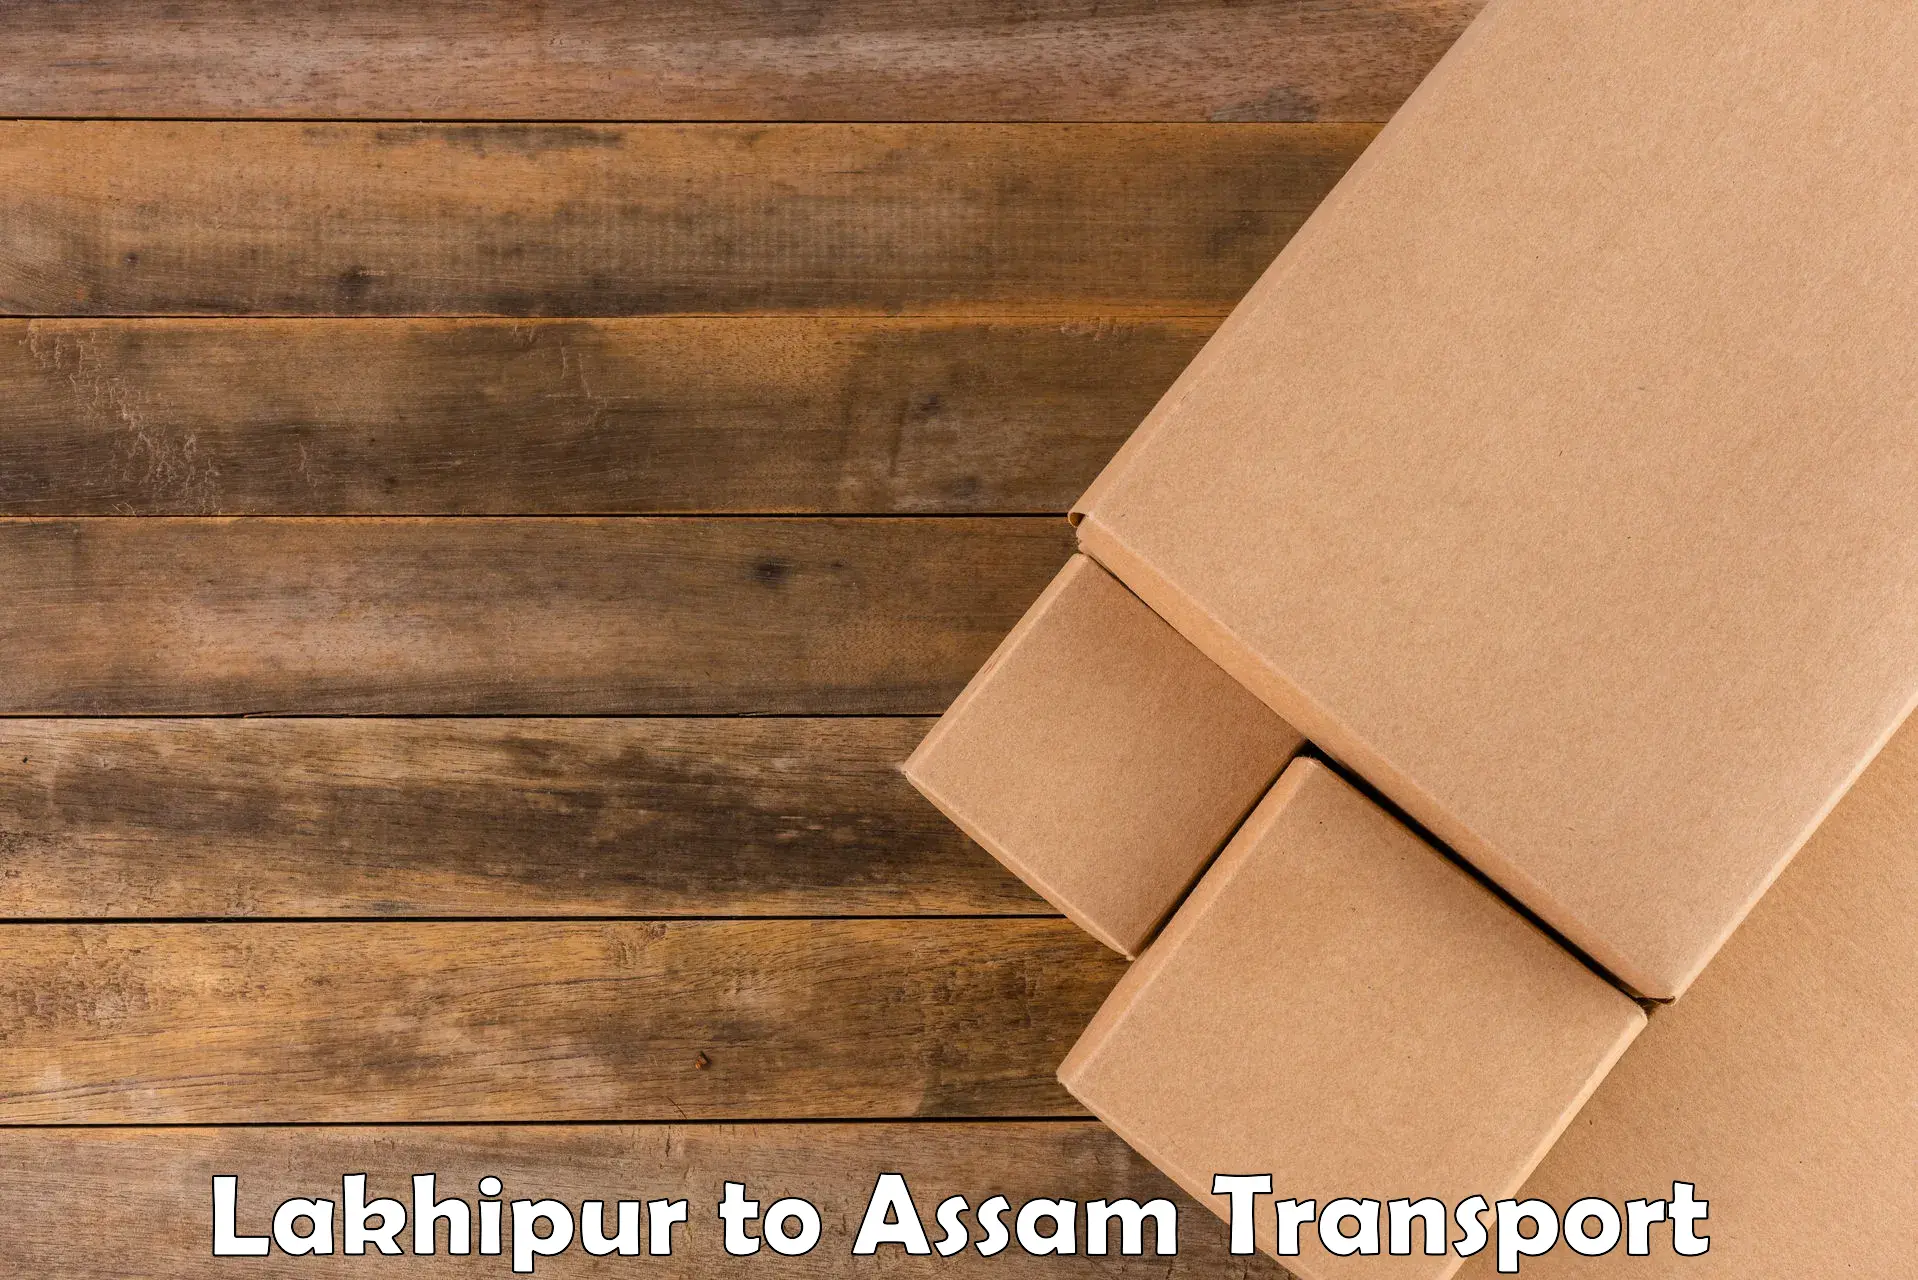 International cargo transportation services Lakhipur to Dhupdhara